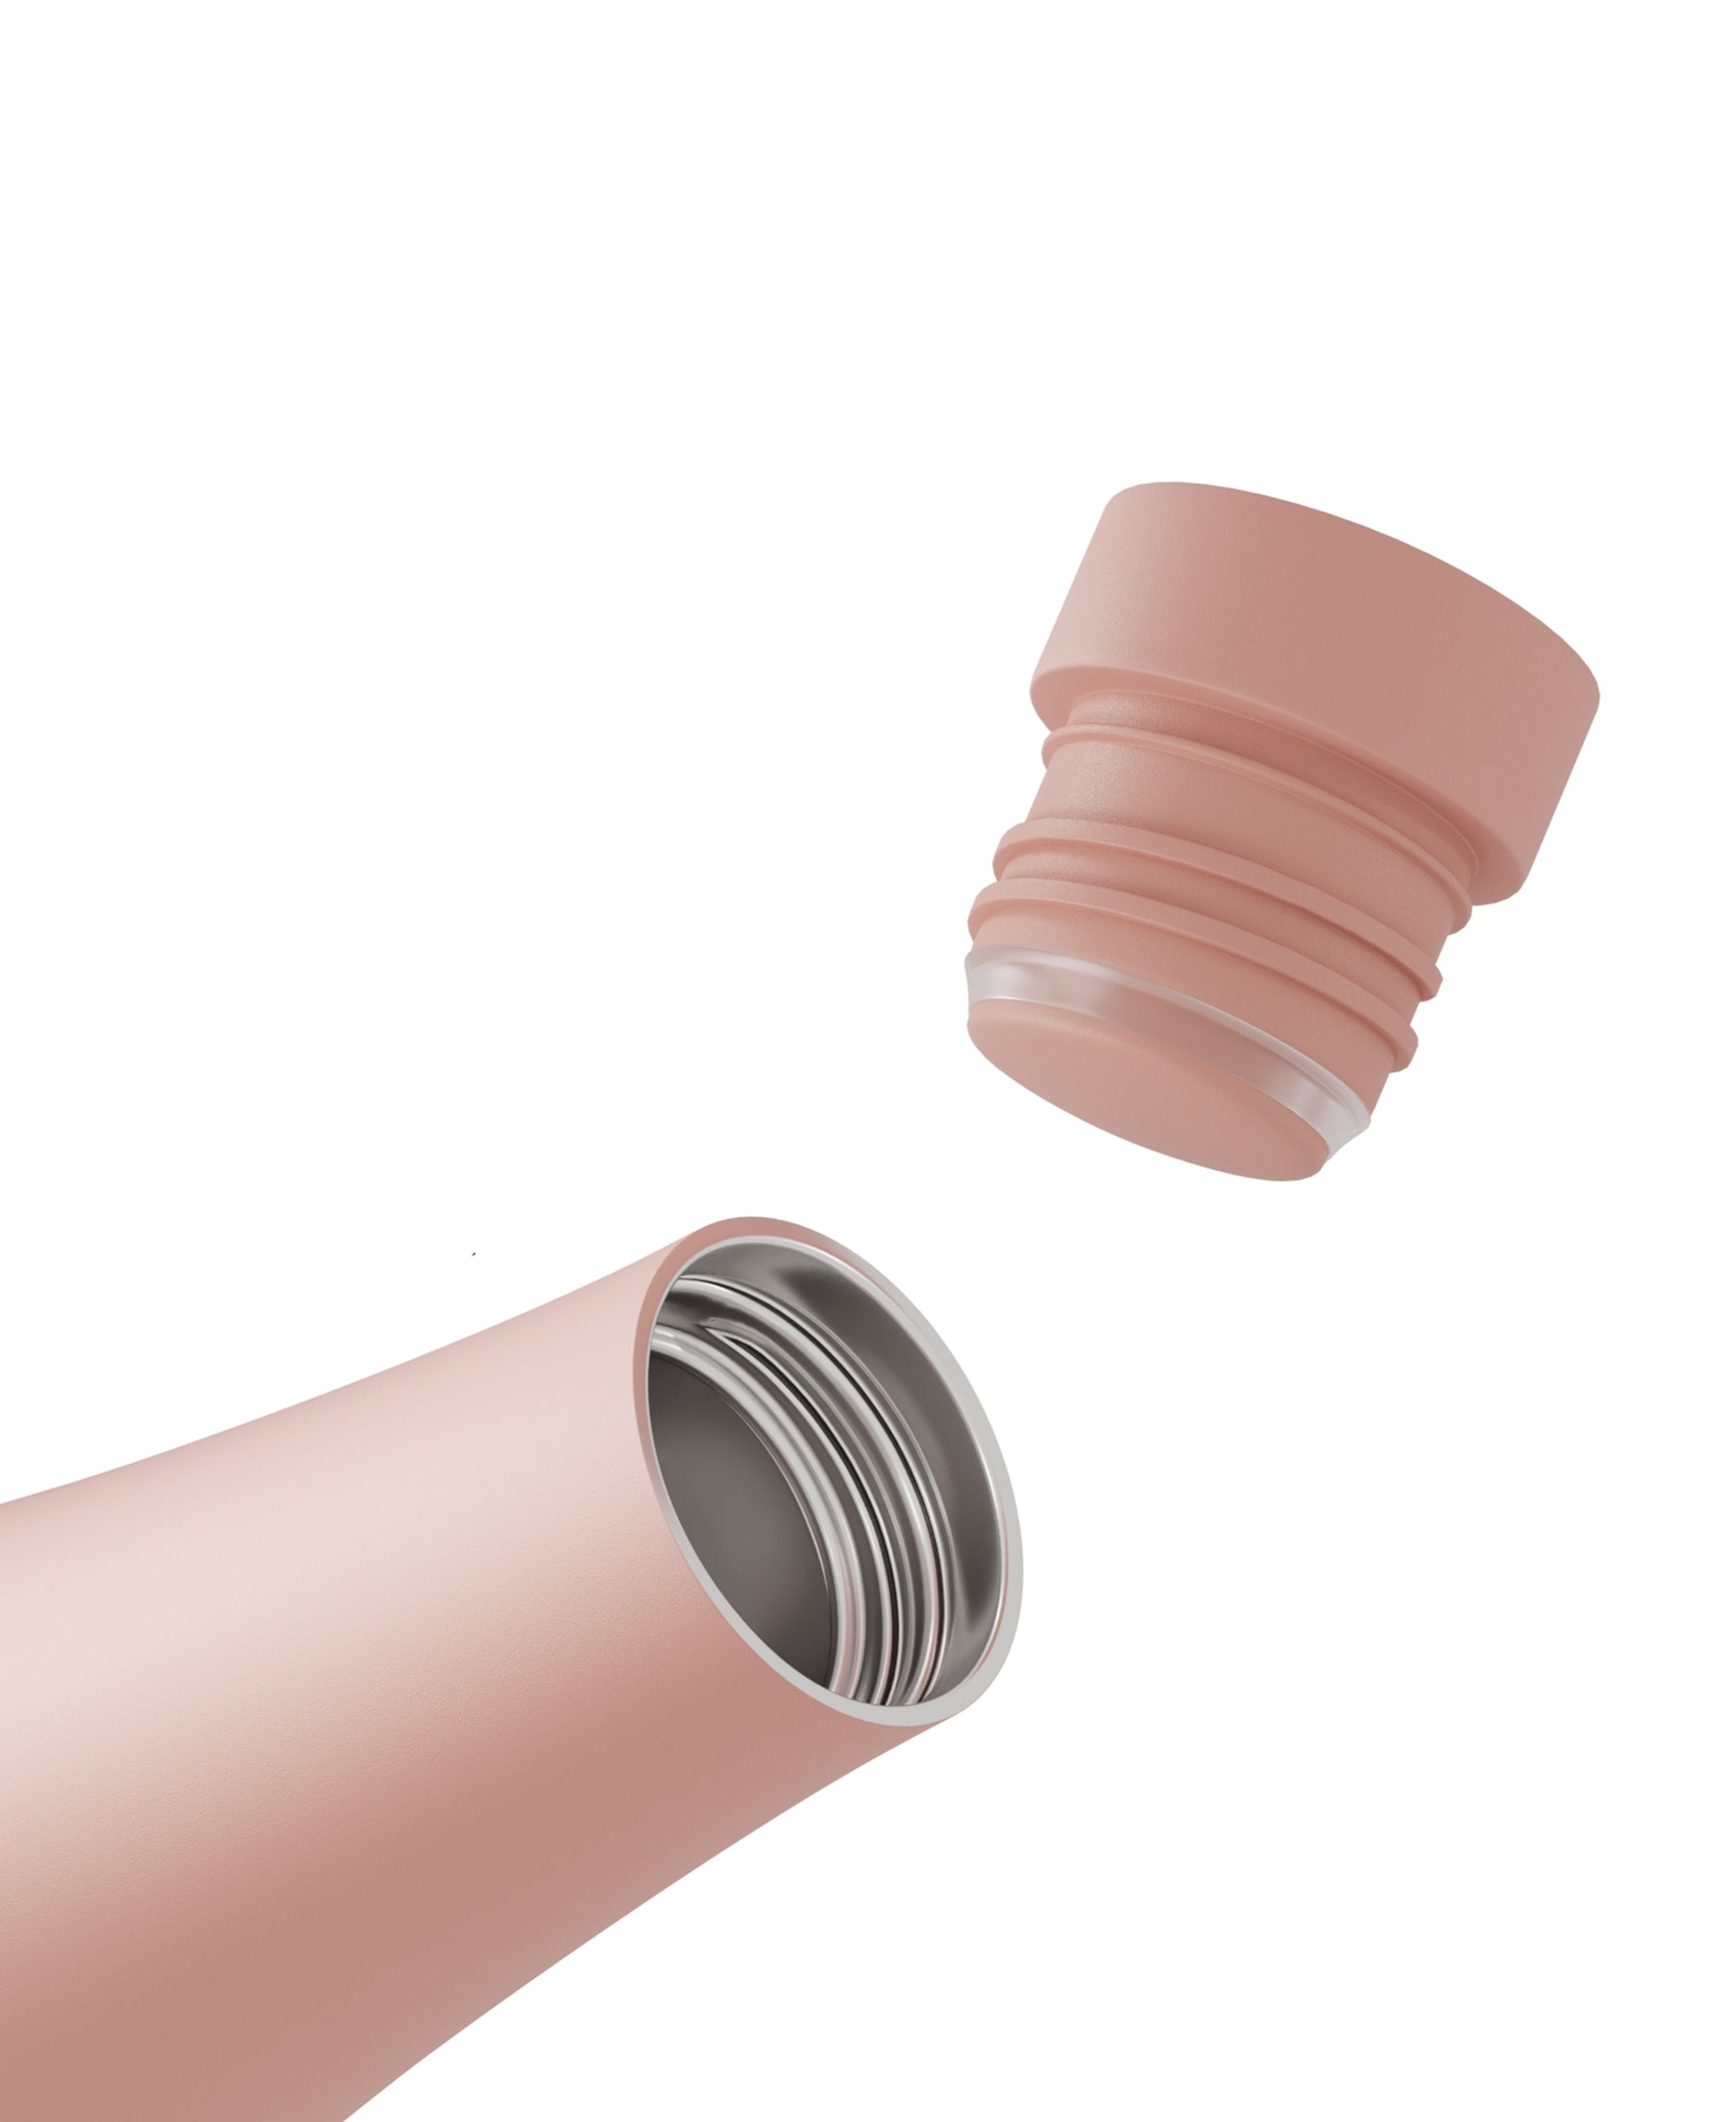 Die rosa Hello.Bottle Edelstahl Trinkflasche mit 500 ml Fassungsvermögen ist die ideale Lösung, um Ihre Getränke stundenlang auf der gewünschten Temperatur zu halten. Egal, ob Sie kaltes Wasser für Ihr Workout oder heißen Kaffee für den Arbeitsweg benötigen, diese Flasche ist Ihr zuverlässiger Begleiter. Bestellen Sie bei SHOP4TEAMSPORT und genießen Sie Getränke in perfekter Temperatur. Die hochwertige Verarbeitung garantiert Langlebigkeit und Stil. Machen Sie diese Flasche zu Ihrem täglichen Begleiter.